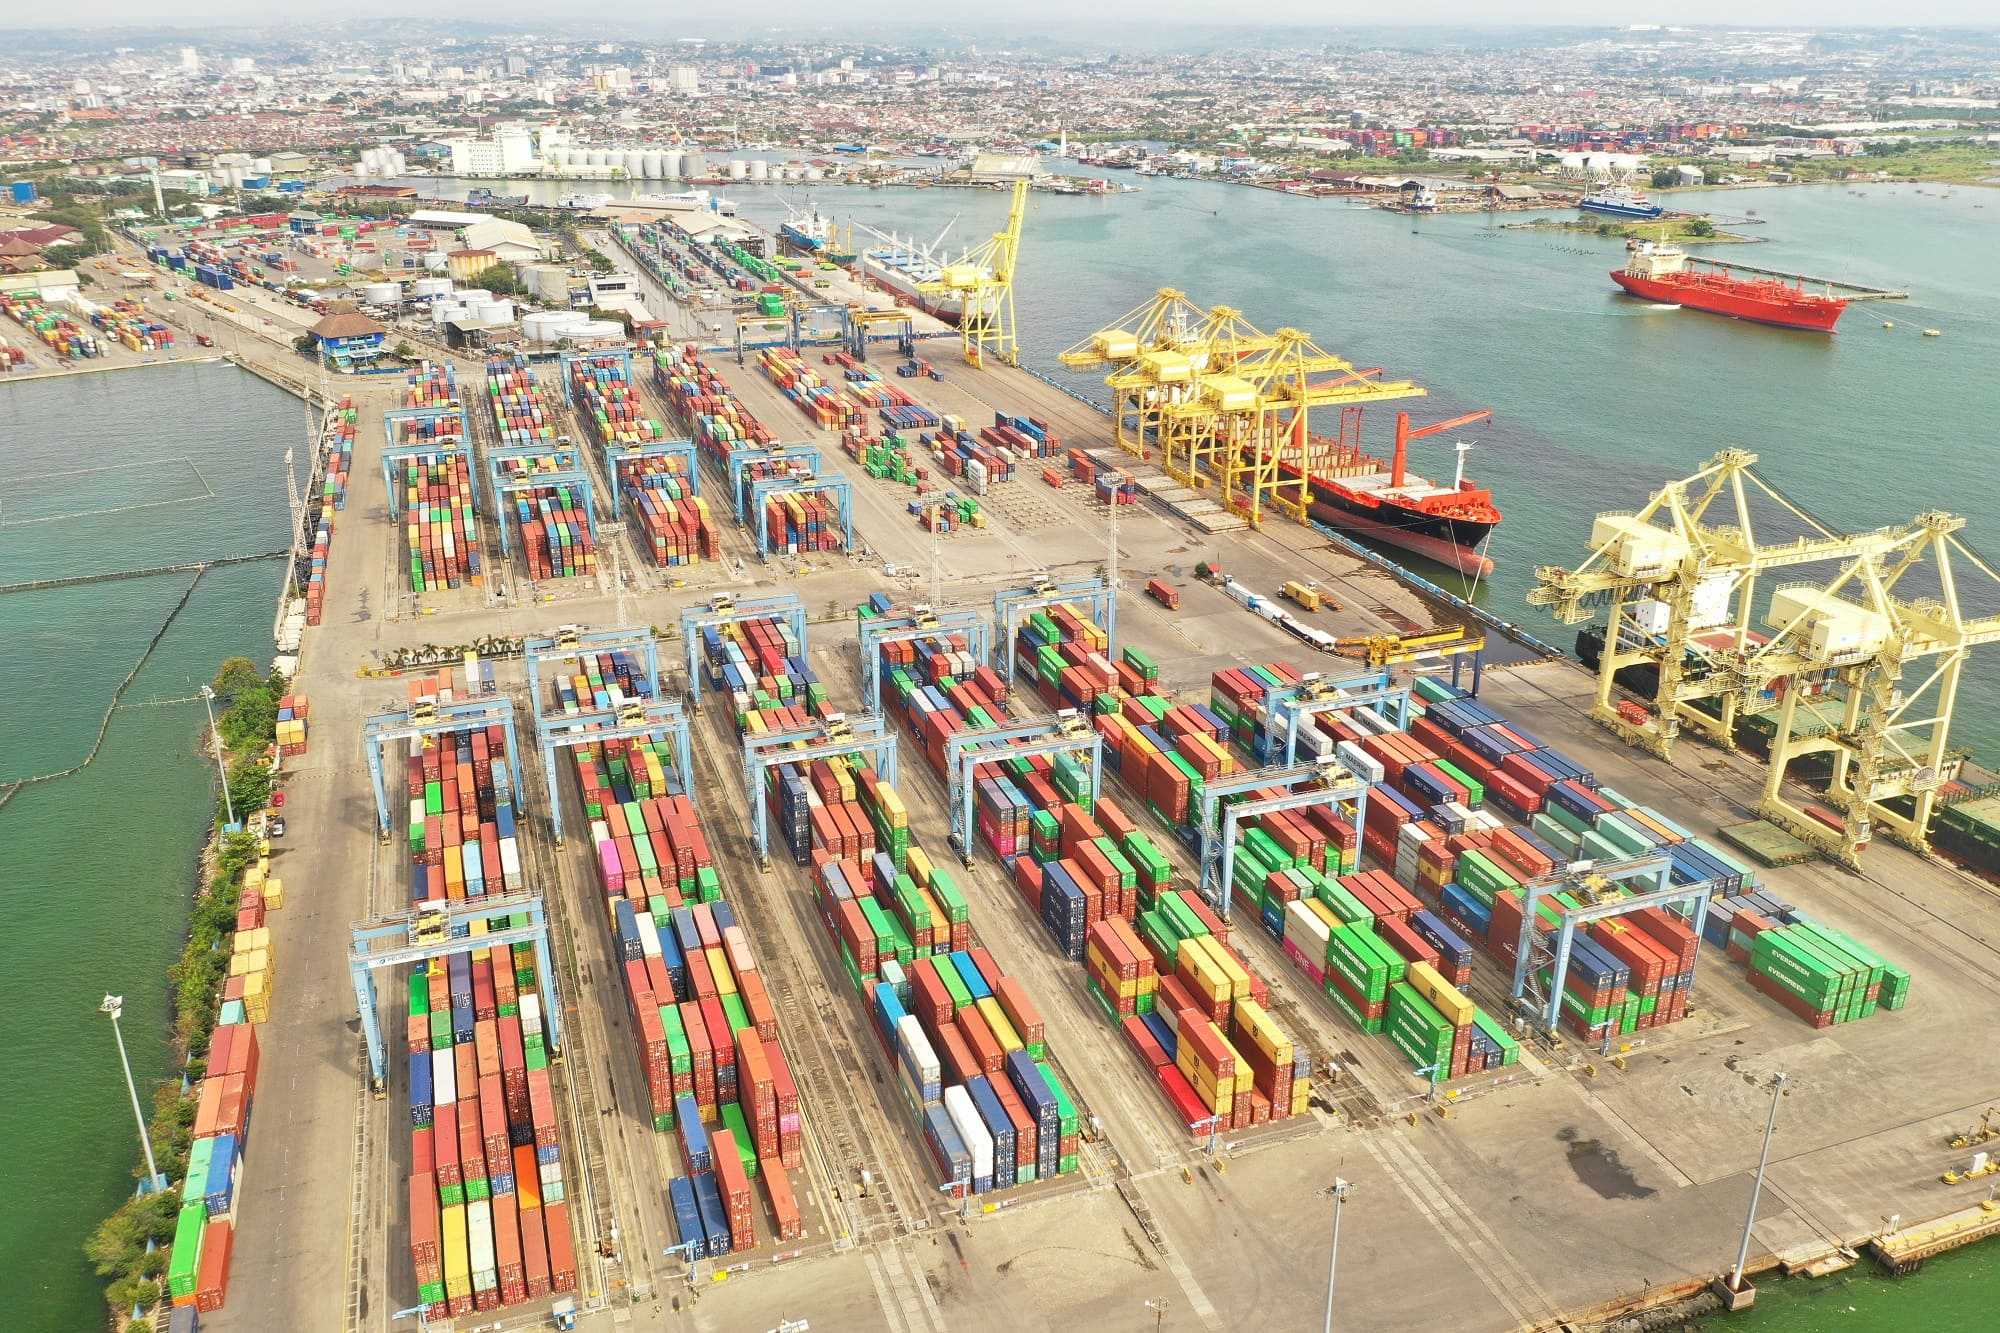 Membanggakan! Menteri BUMN Optimis Pelindo Mampu Jadi Operator Pelabuhan Kelas Dunia